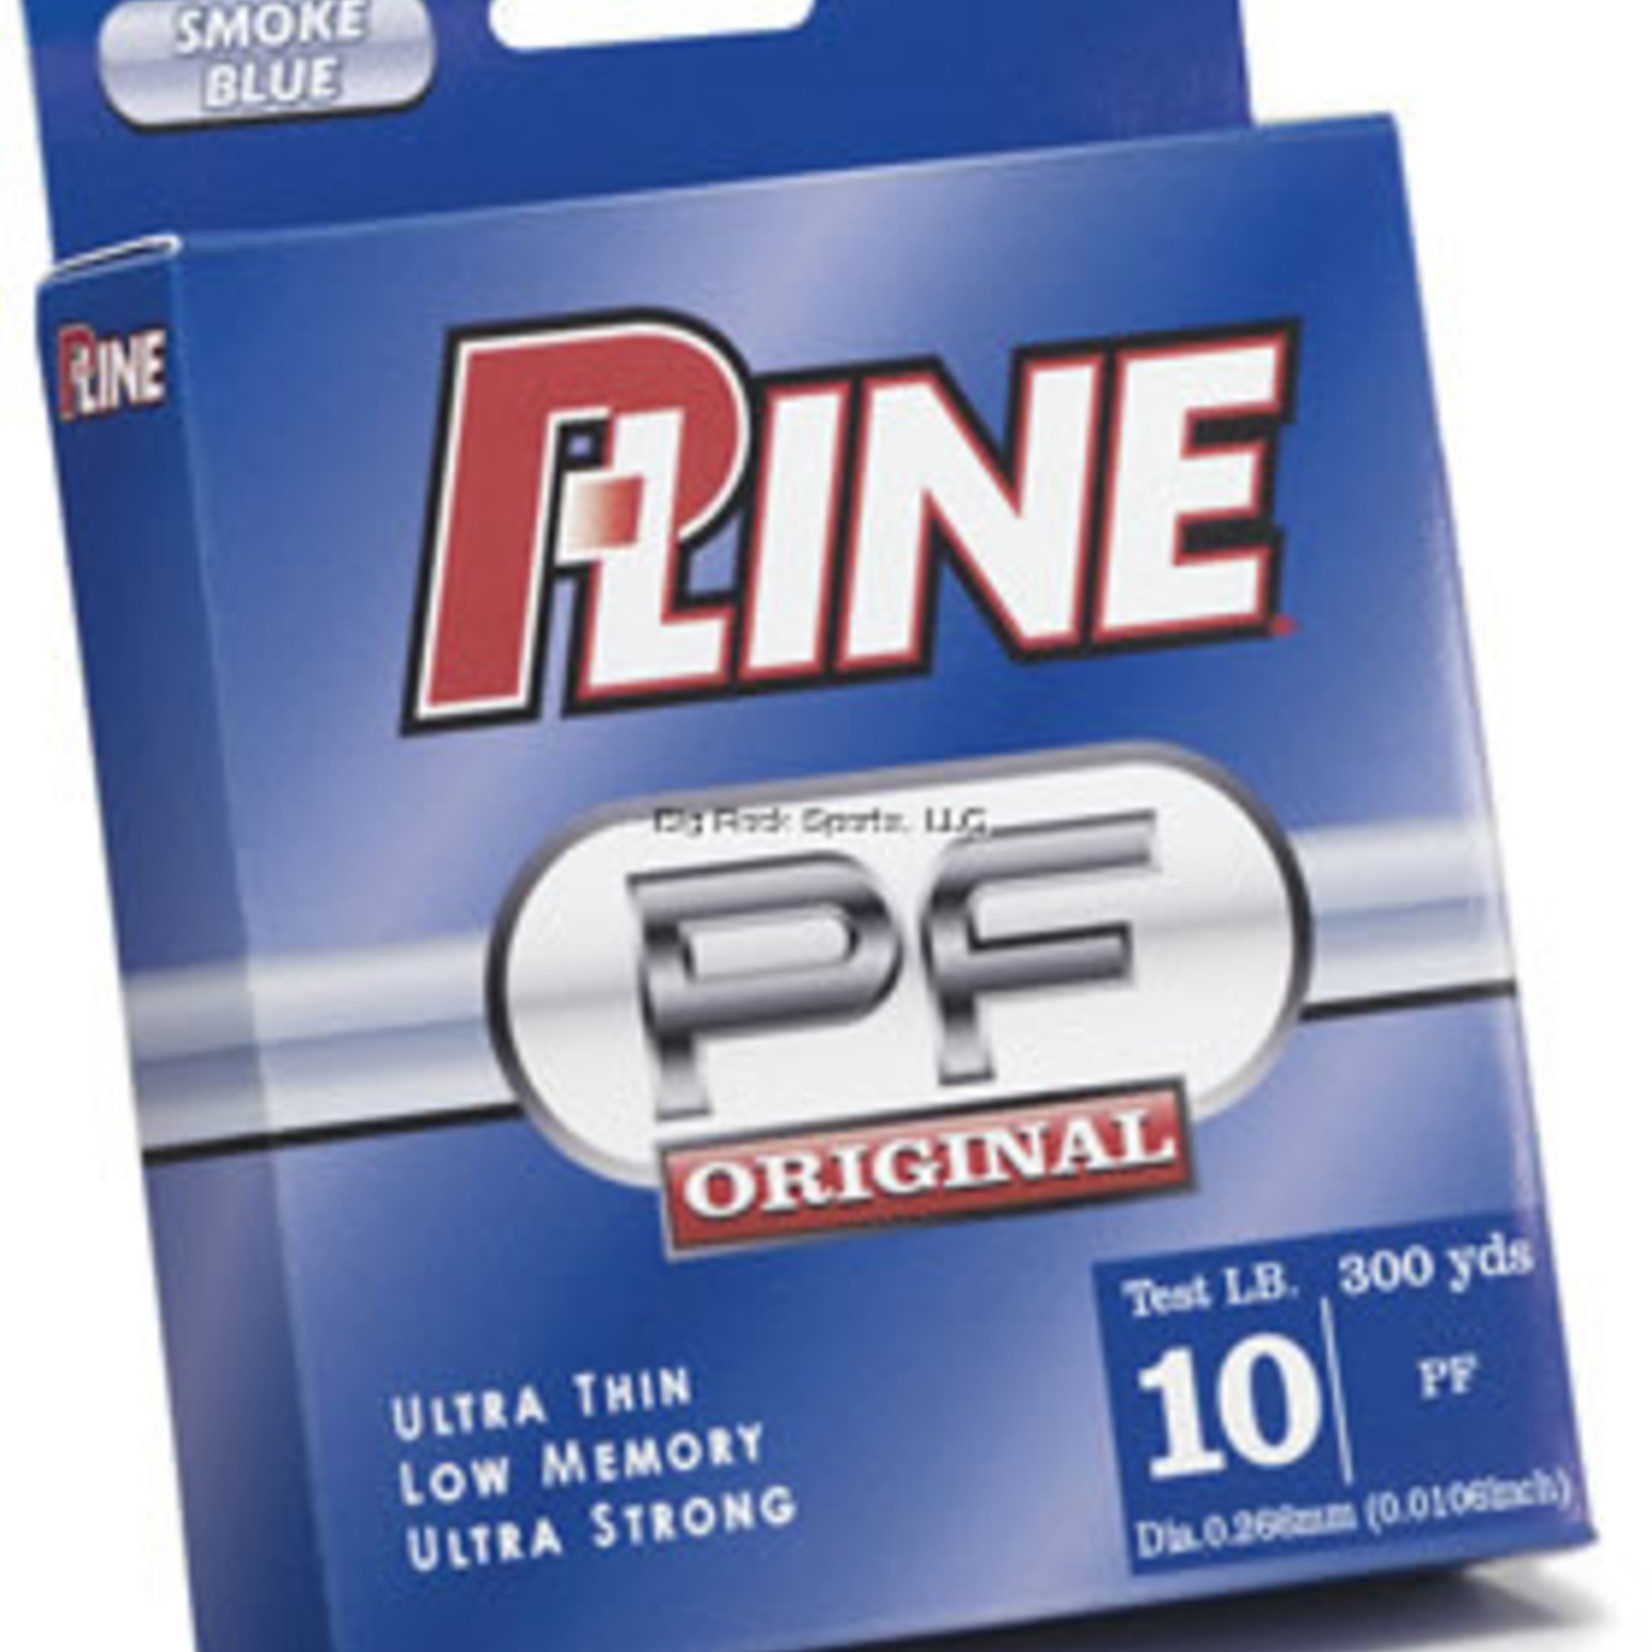 P-LINE P-LINE PF Original 300yd Smoke Blue